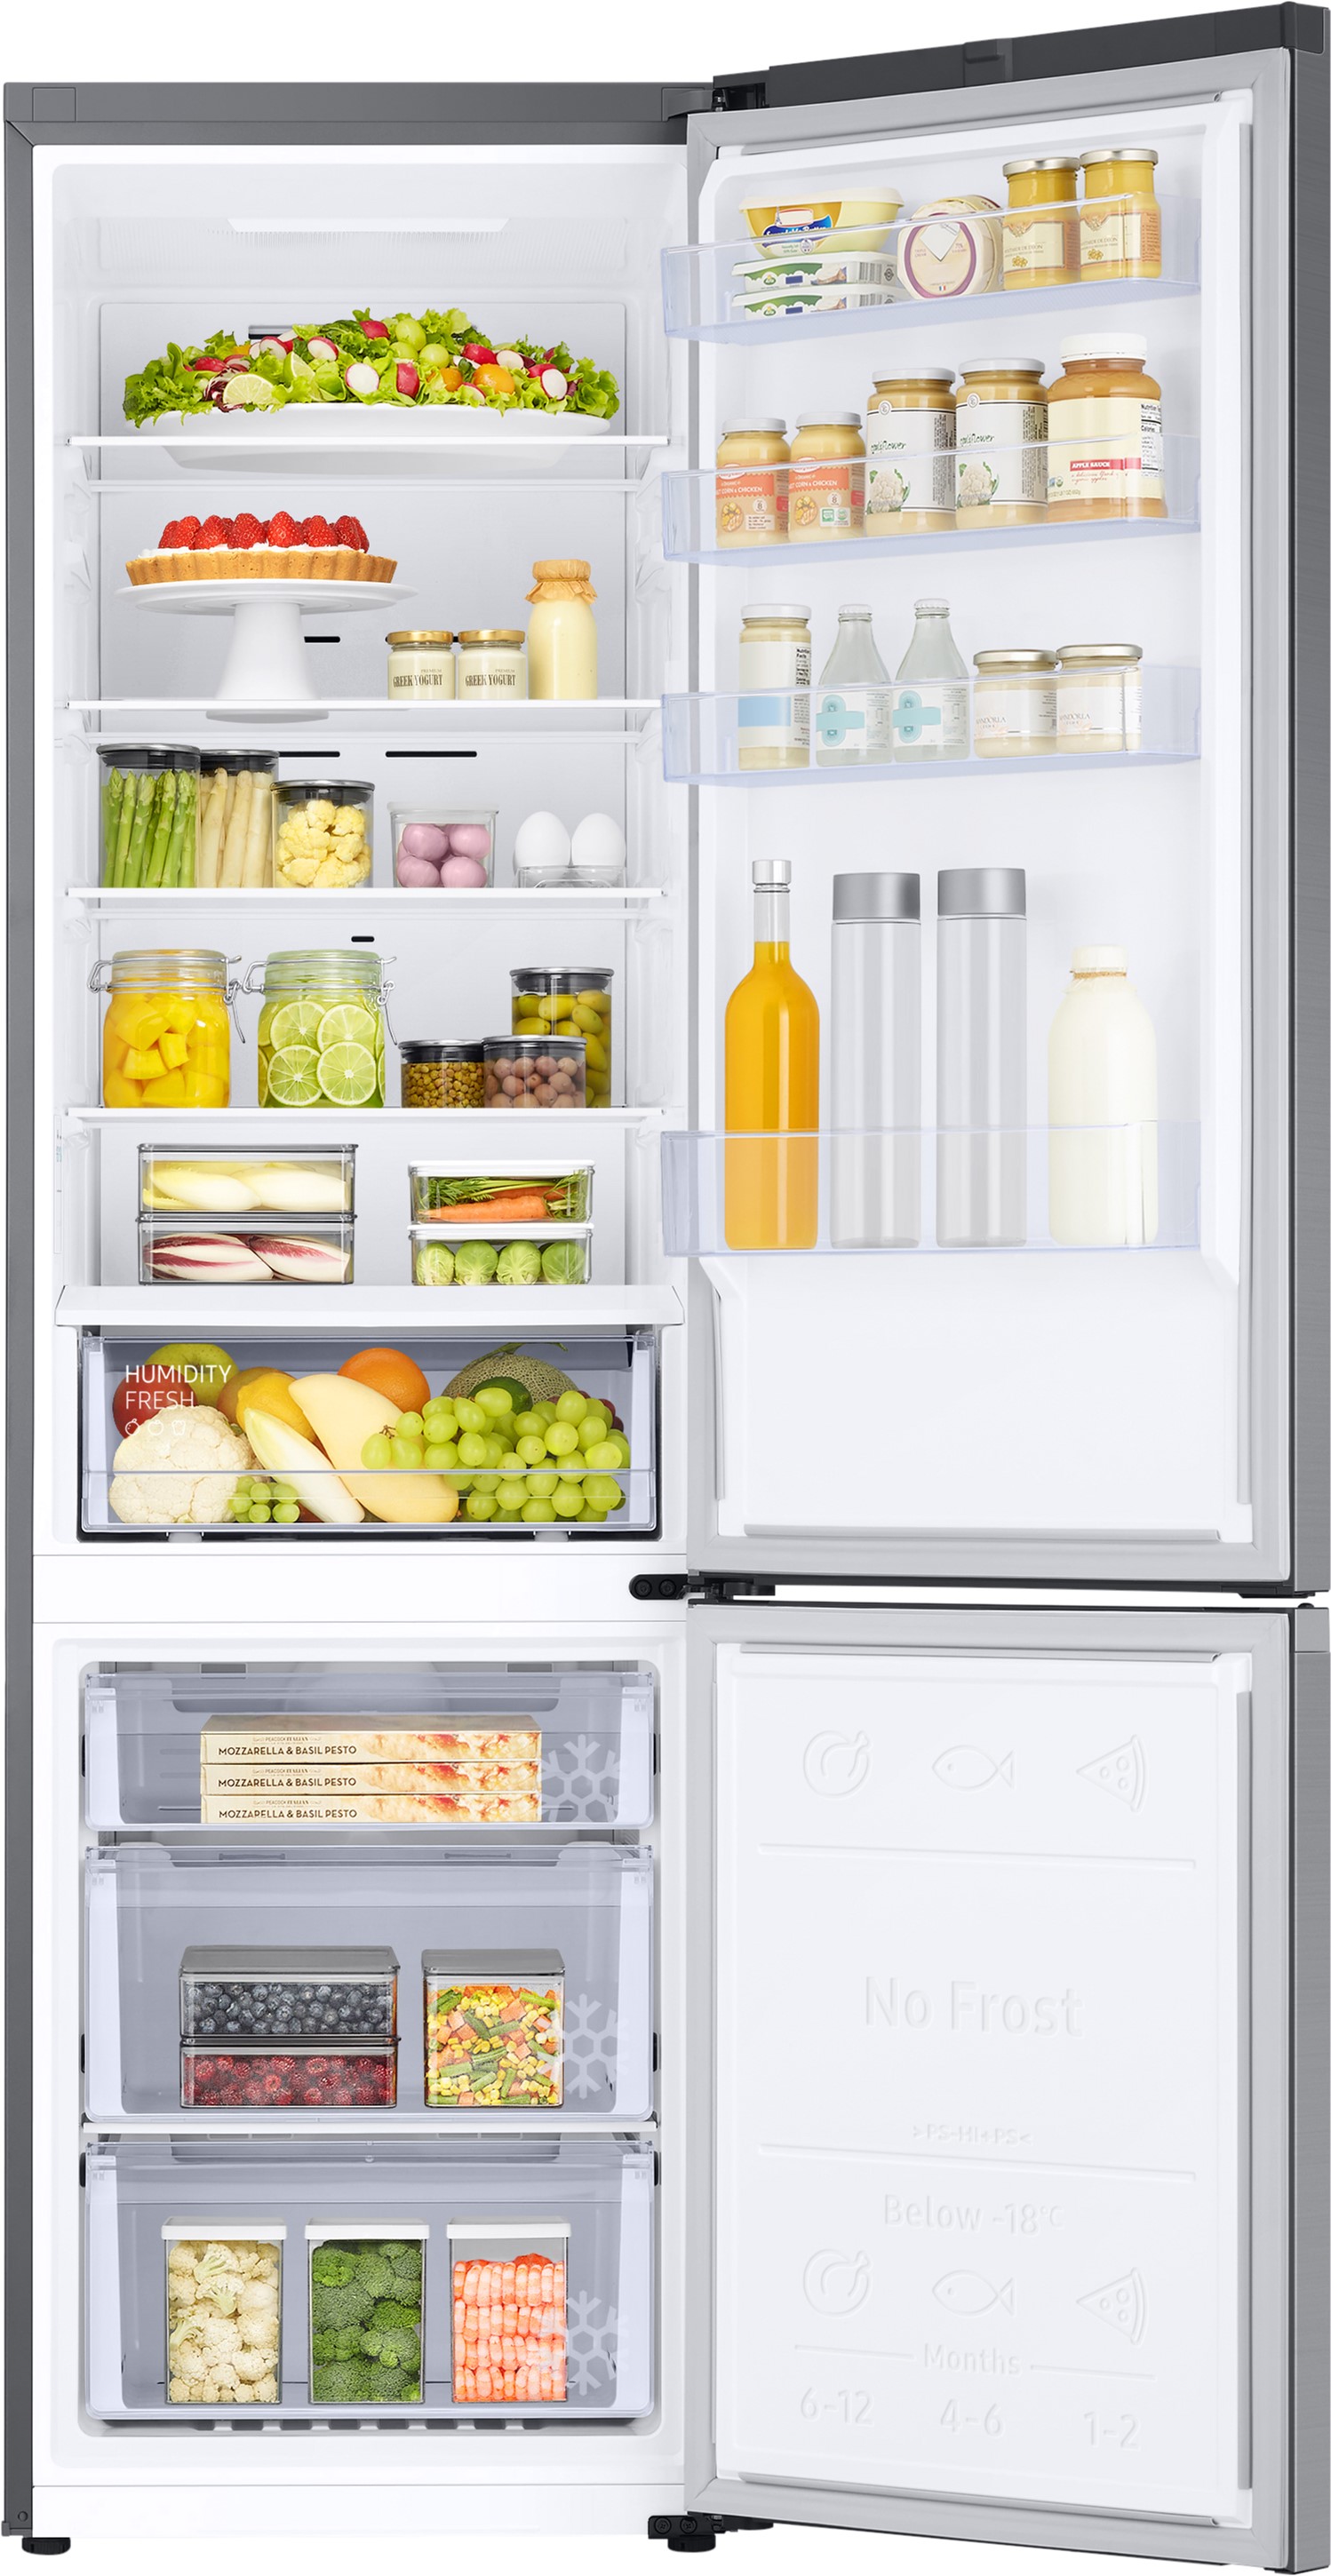 Холодильник Samsung RB38C600ES9/UA отзывы - изображения 5